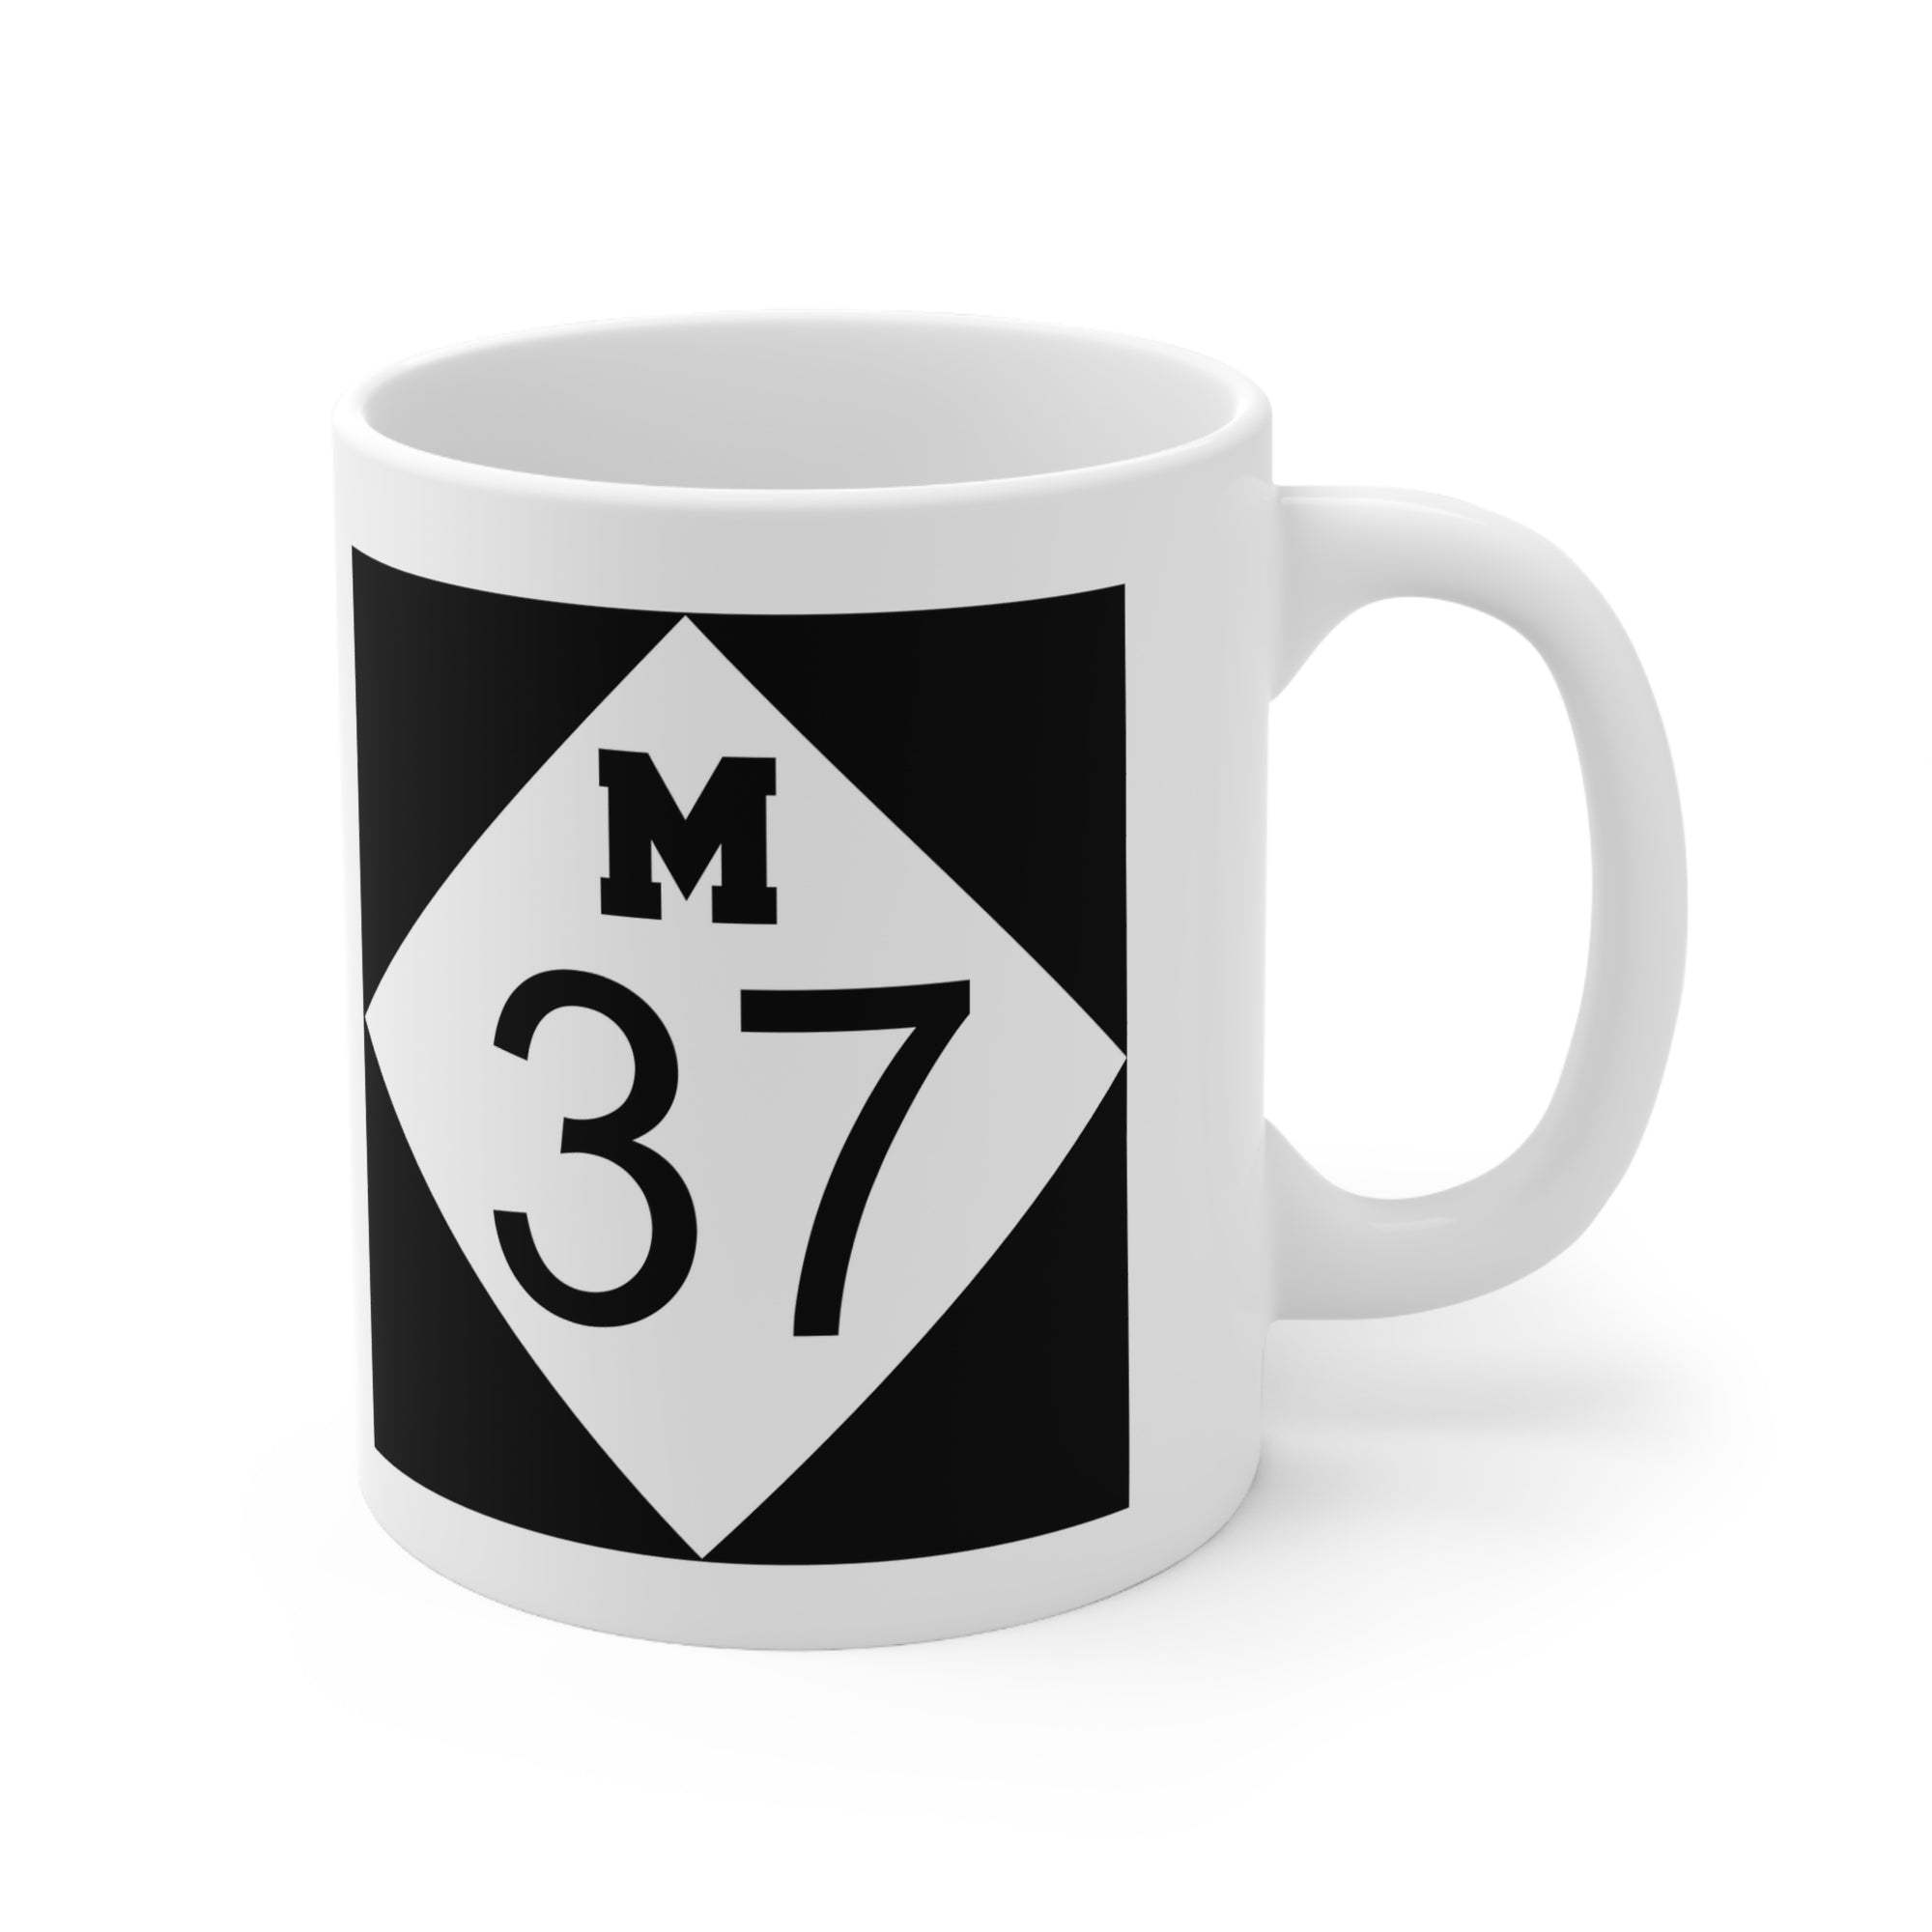 M37 Ceramic Mug 11 oz.